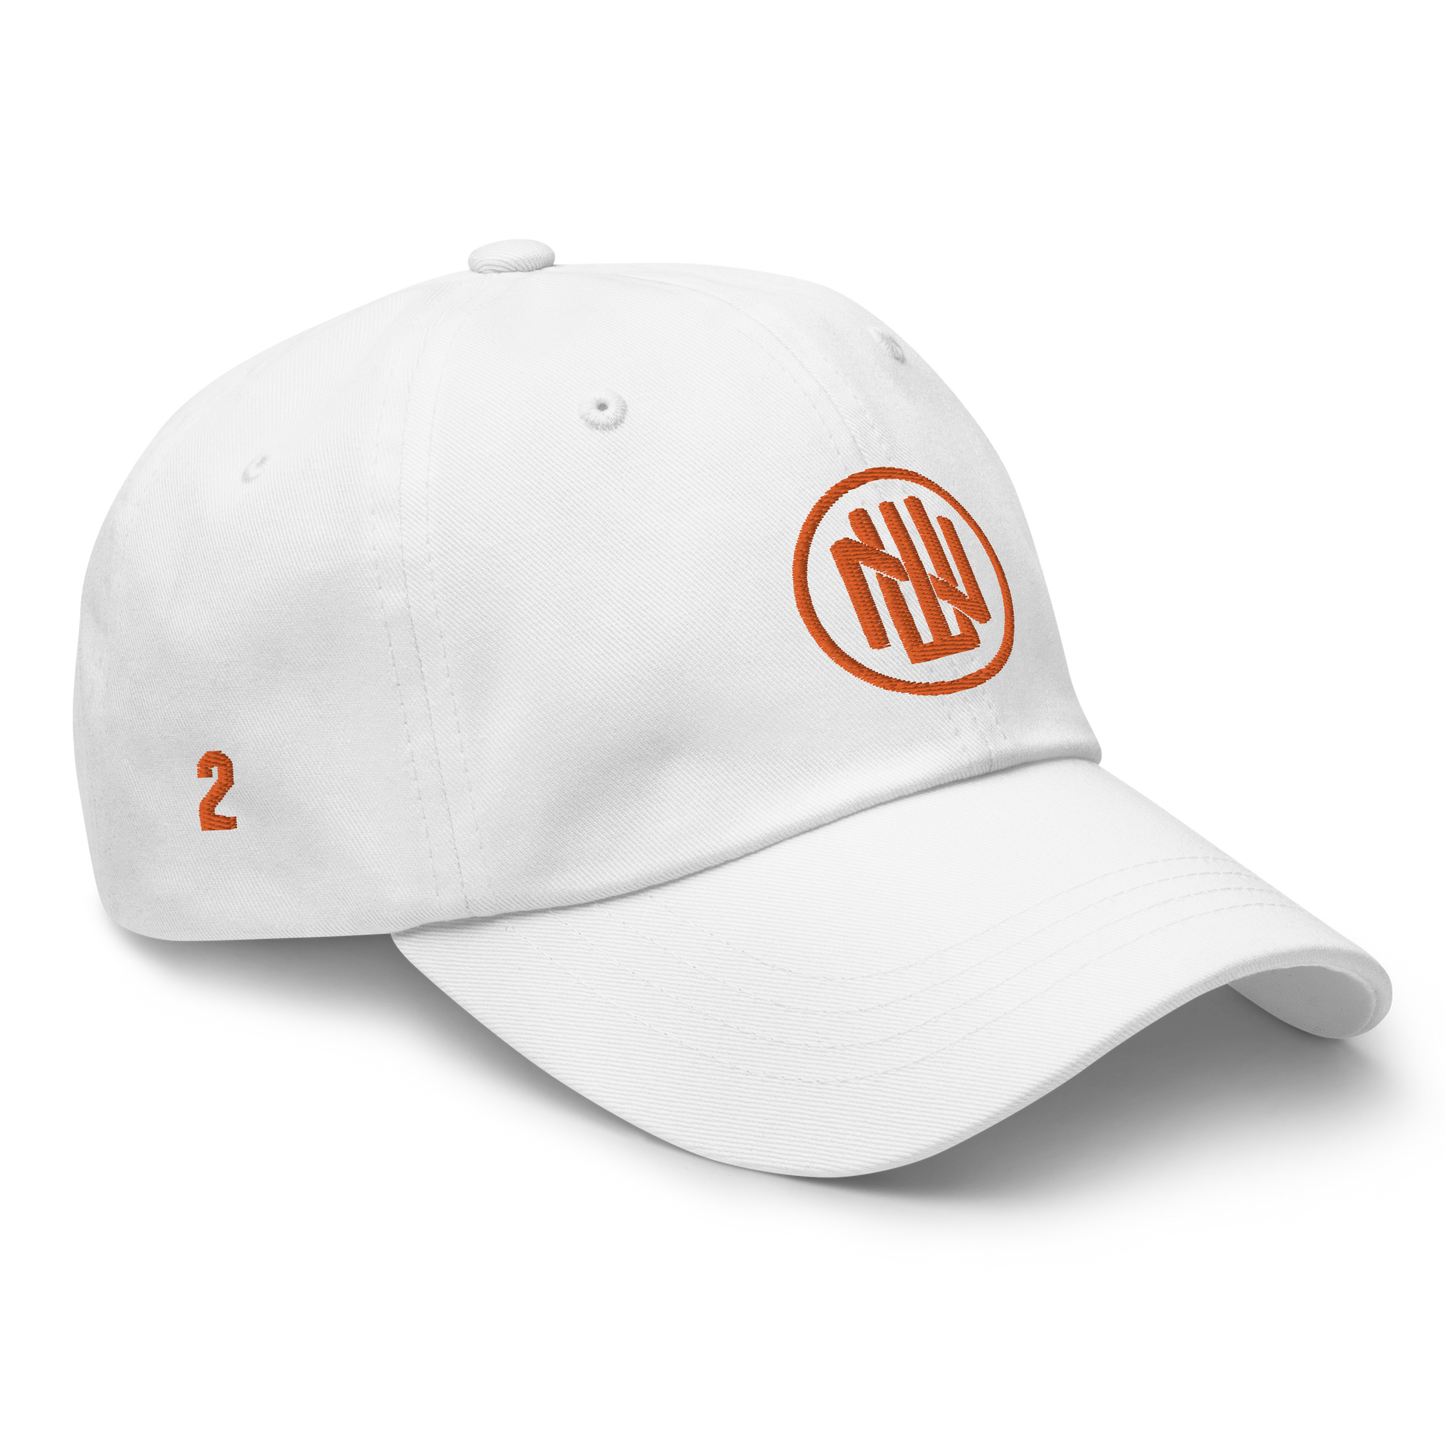 NATE WIGGINS PERFORMANCE CAP